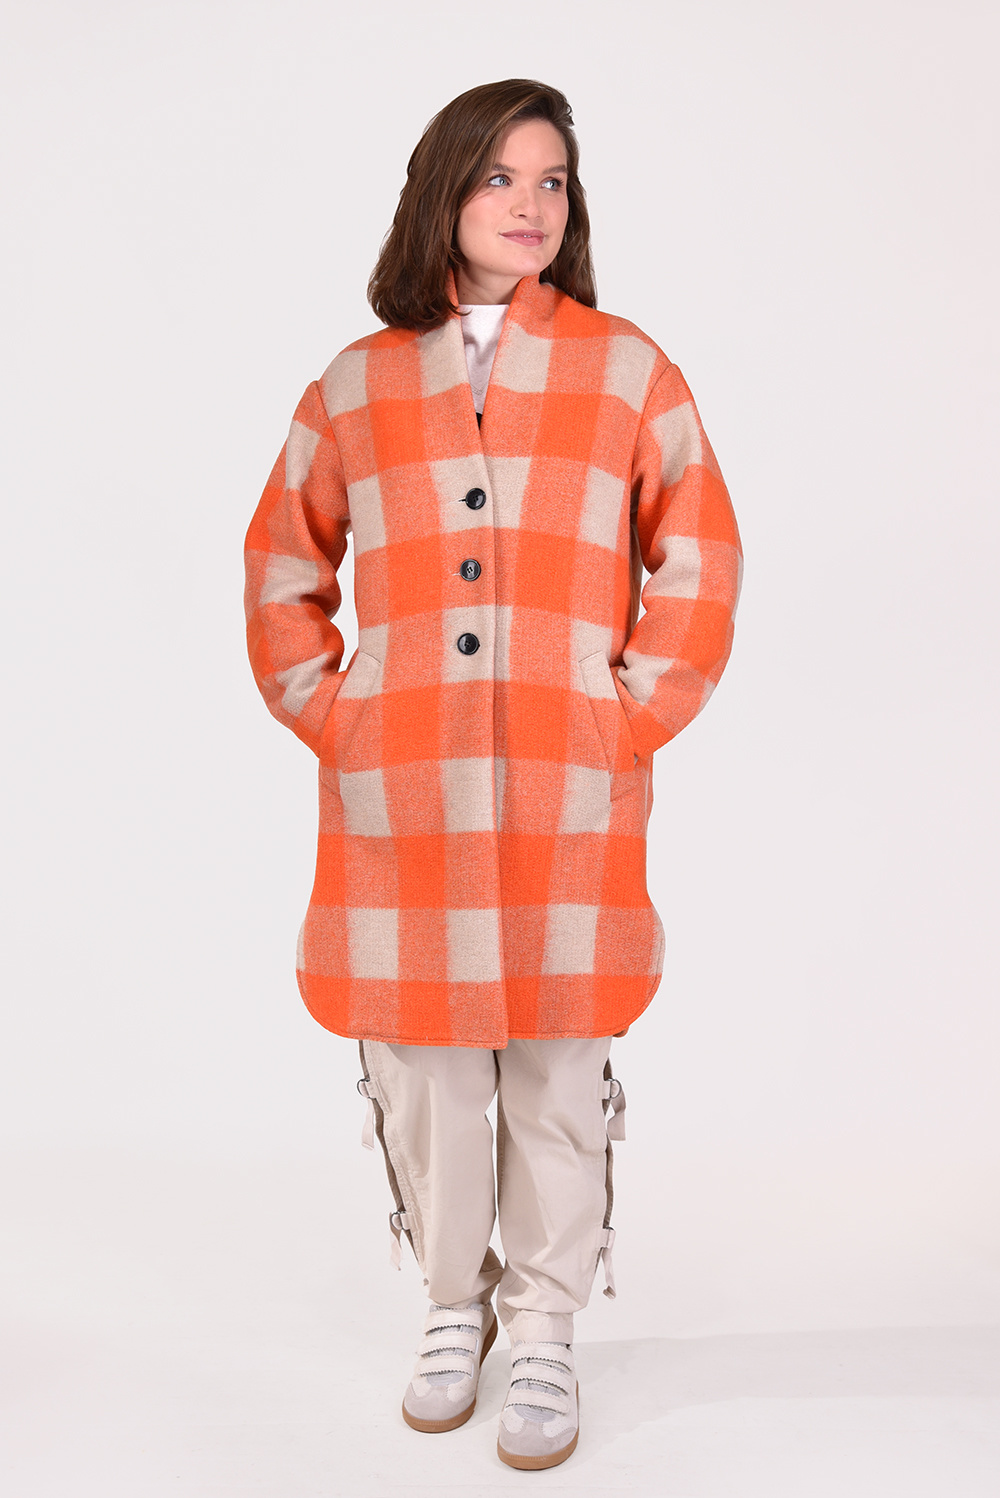 Marant Etoile coat Gabriel MA0019FA-A1D24E orange - Marjon Snieders